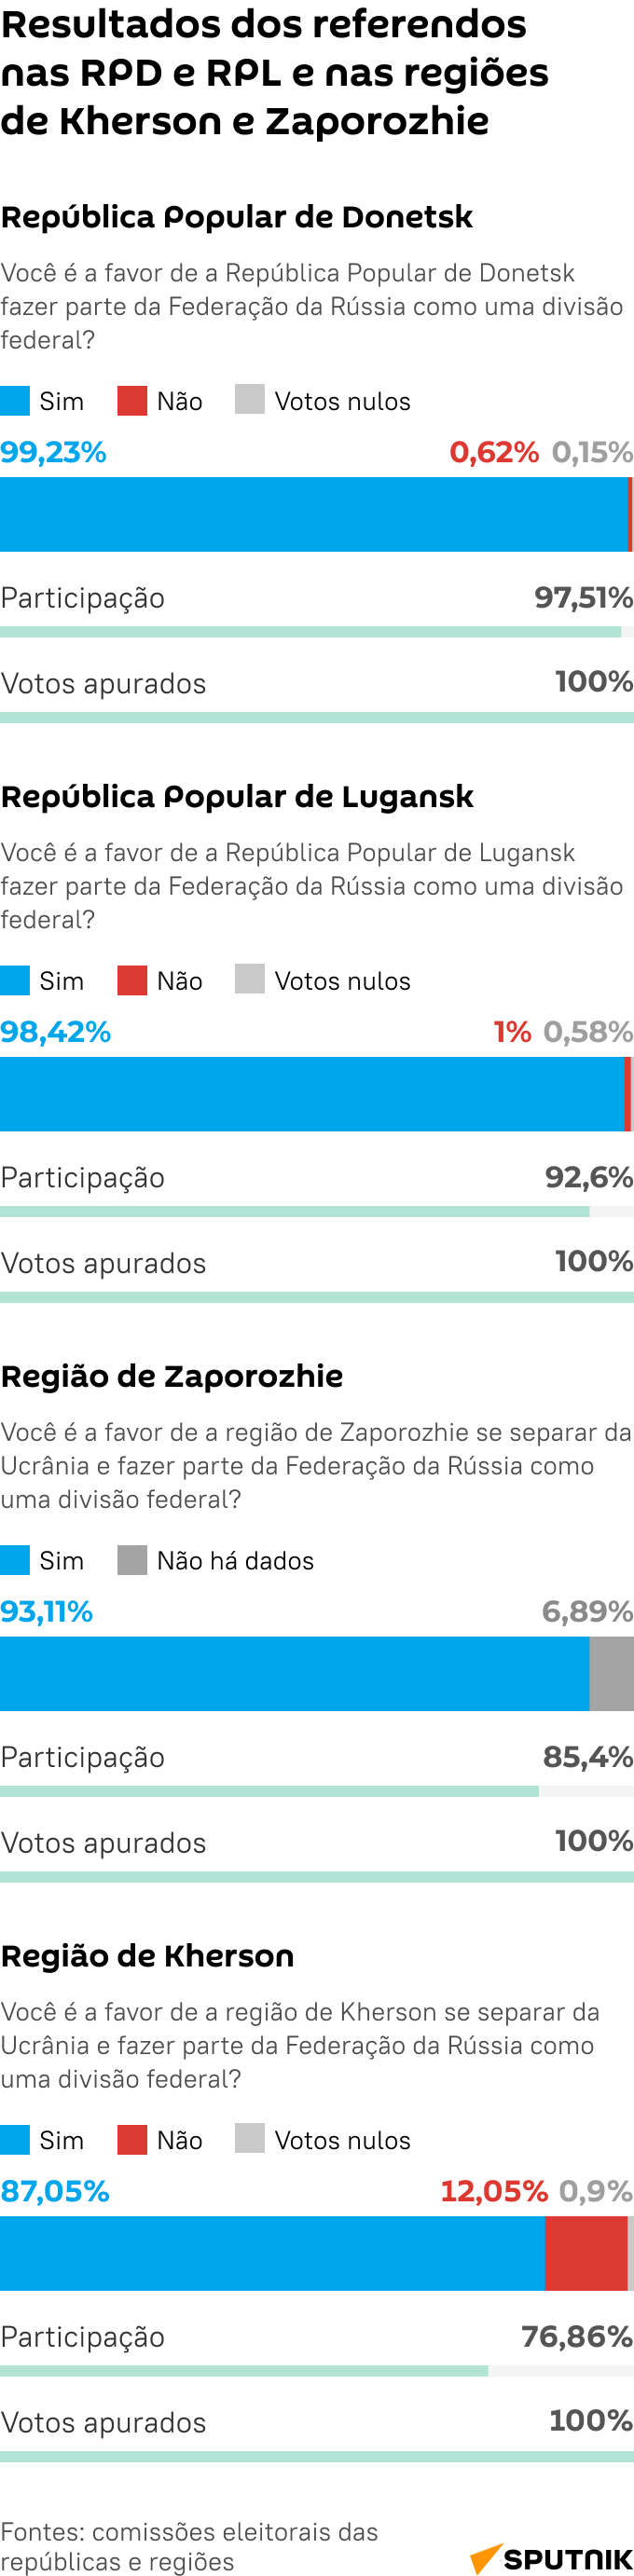 Resultados dos referendos nos territórios libertados - Sputnik Brasil